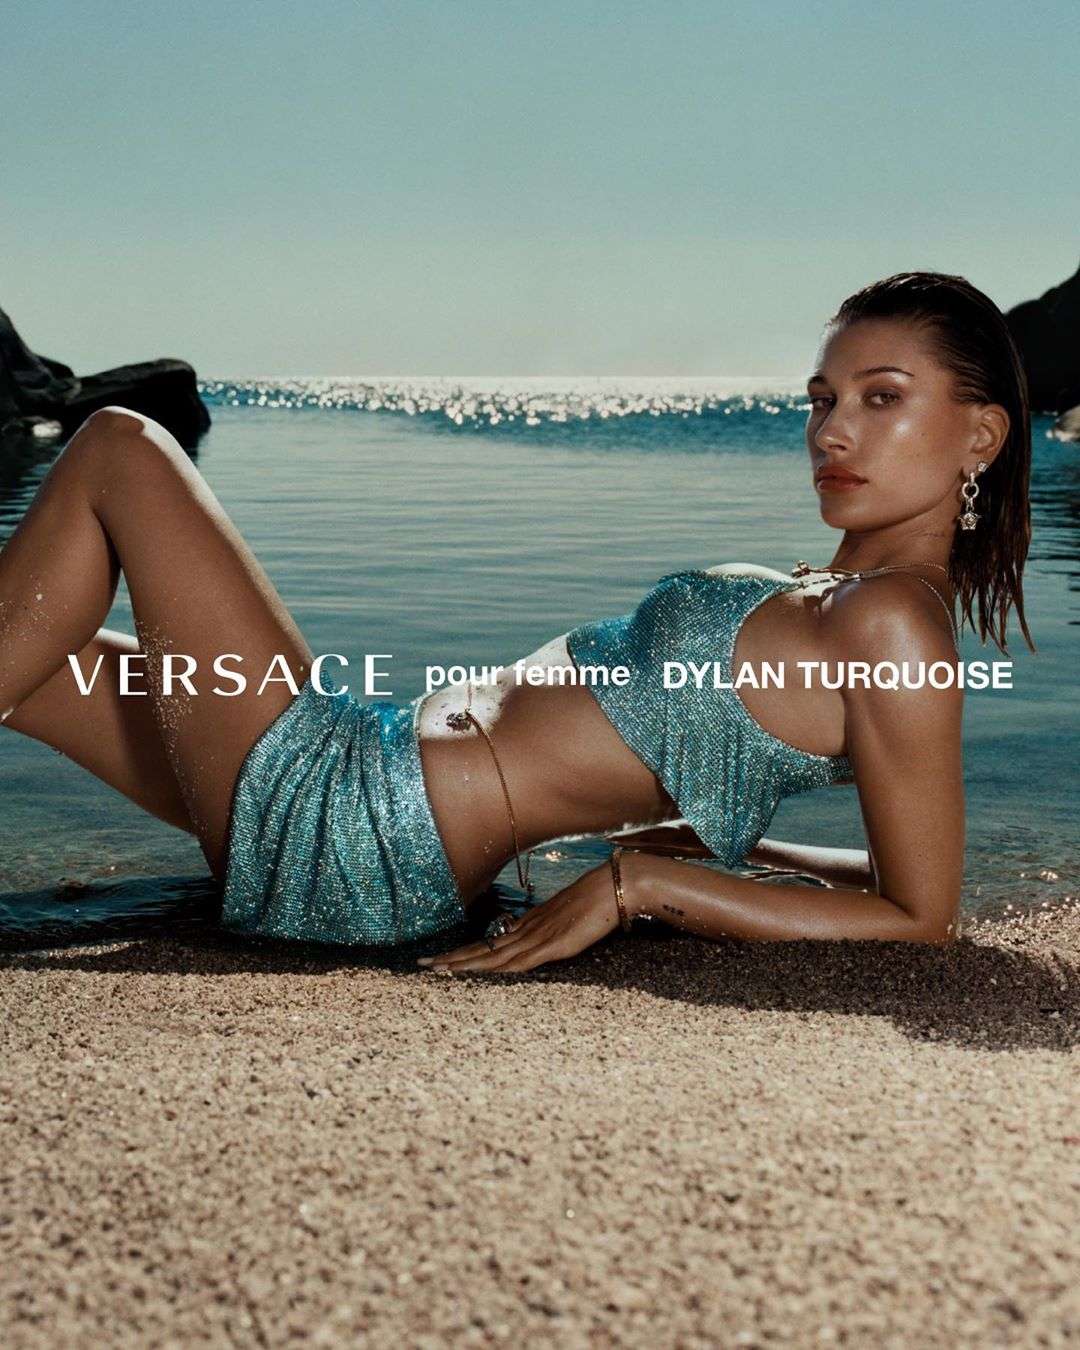 Італійська чуттєвість: Белла Хадід і Гейлі Бібер знялись у сексуальній рекламі Versace - фото 491420